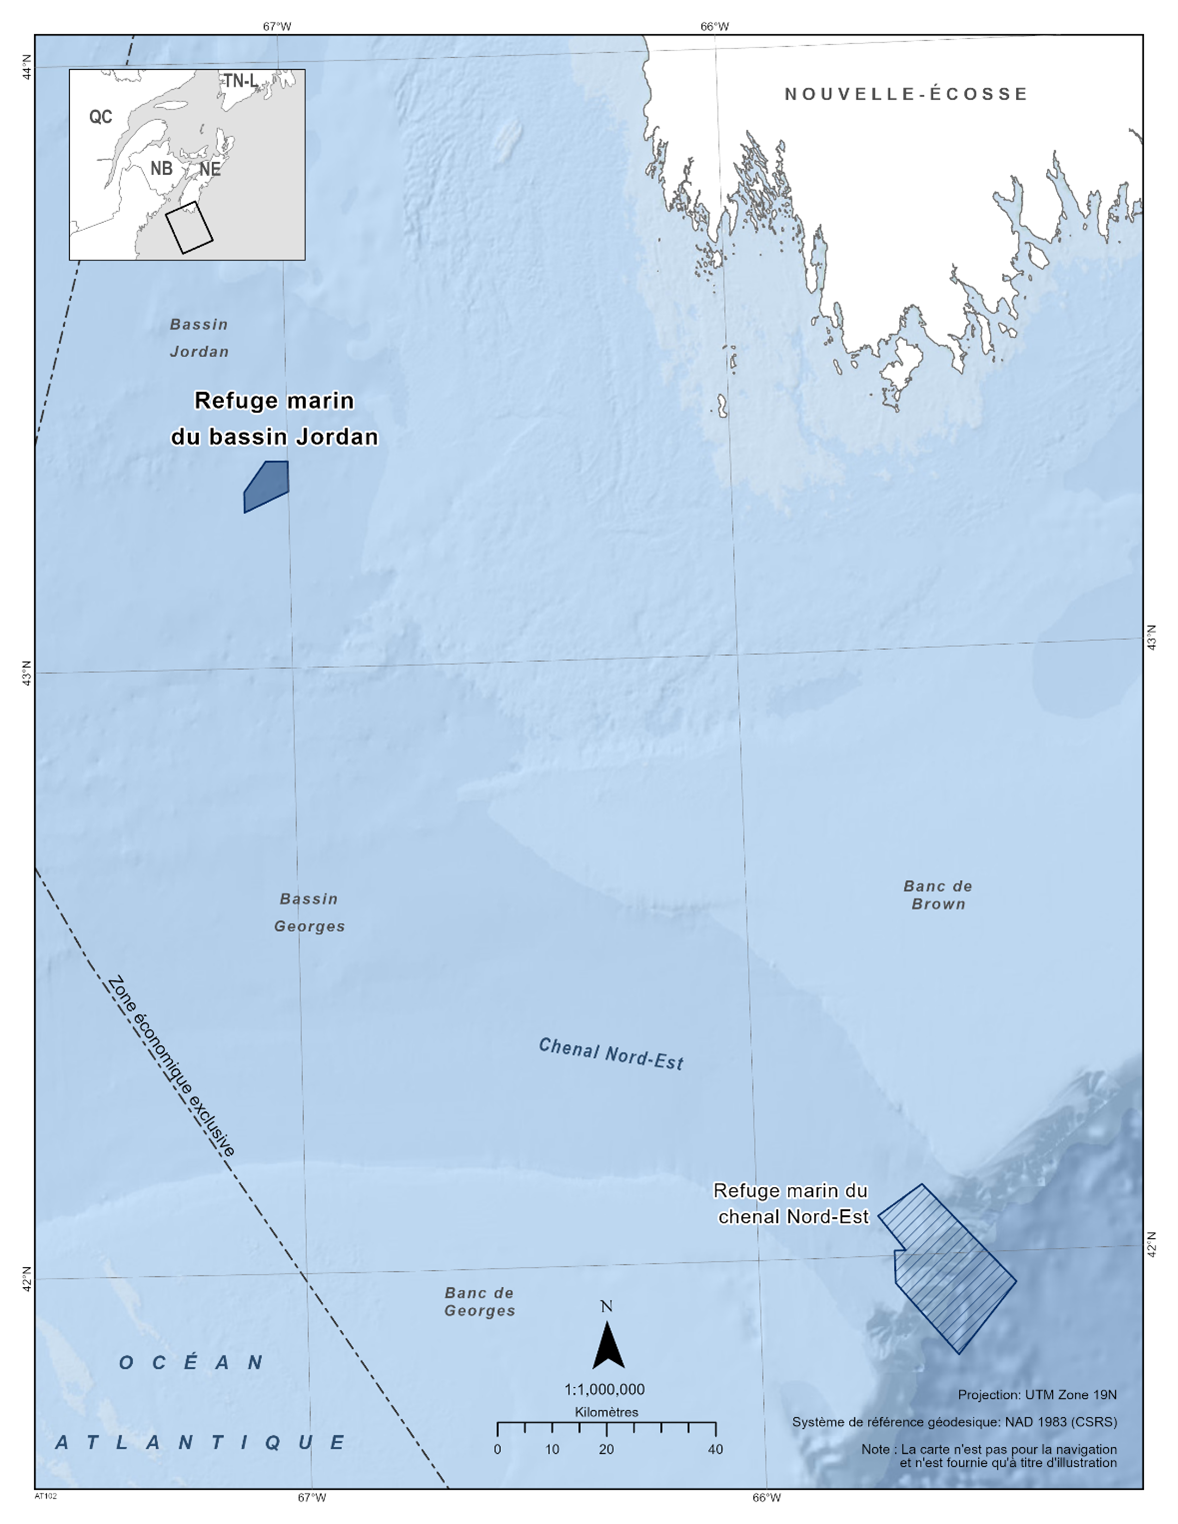 Carte du refuge marin du bassin Jordan en bleu foncé. La carte présente également les refuges marins à proximité avec des lignes diagonales bleu foncé (refuge marin du chenal Nord-Est). 